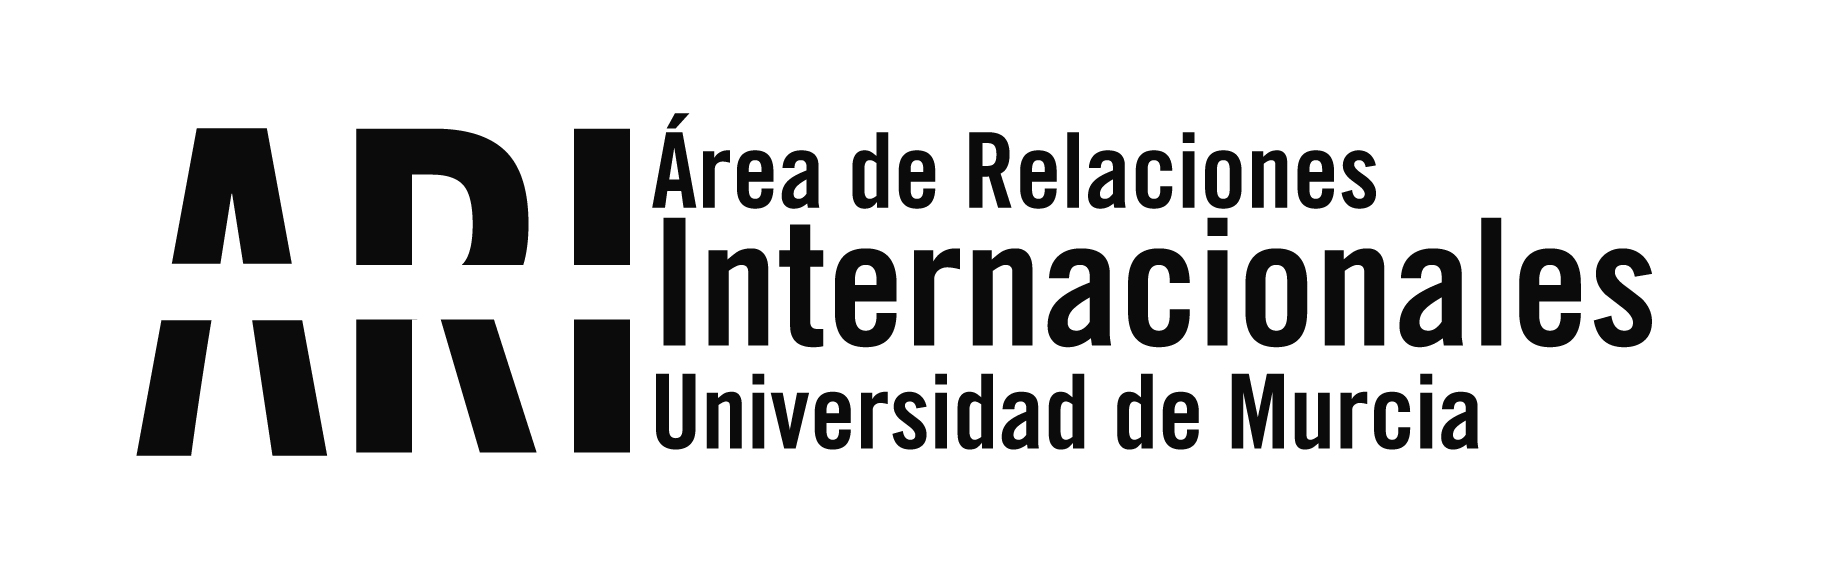 2013 - Eventos - Área de Relaciones Internacionales